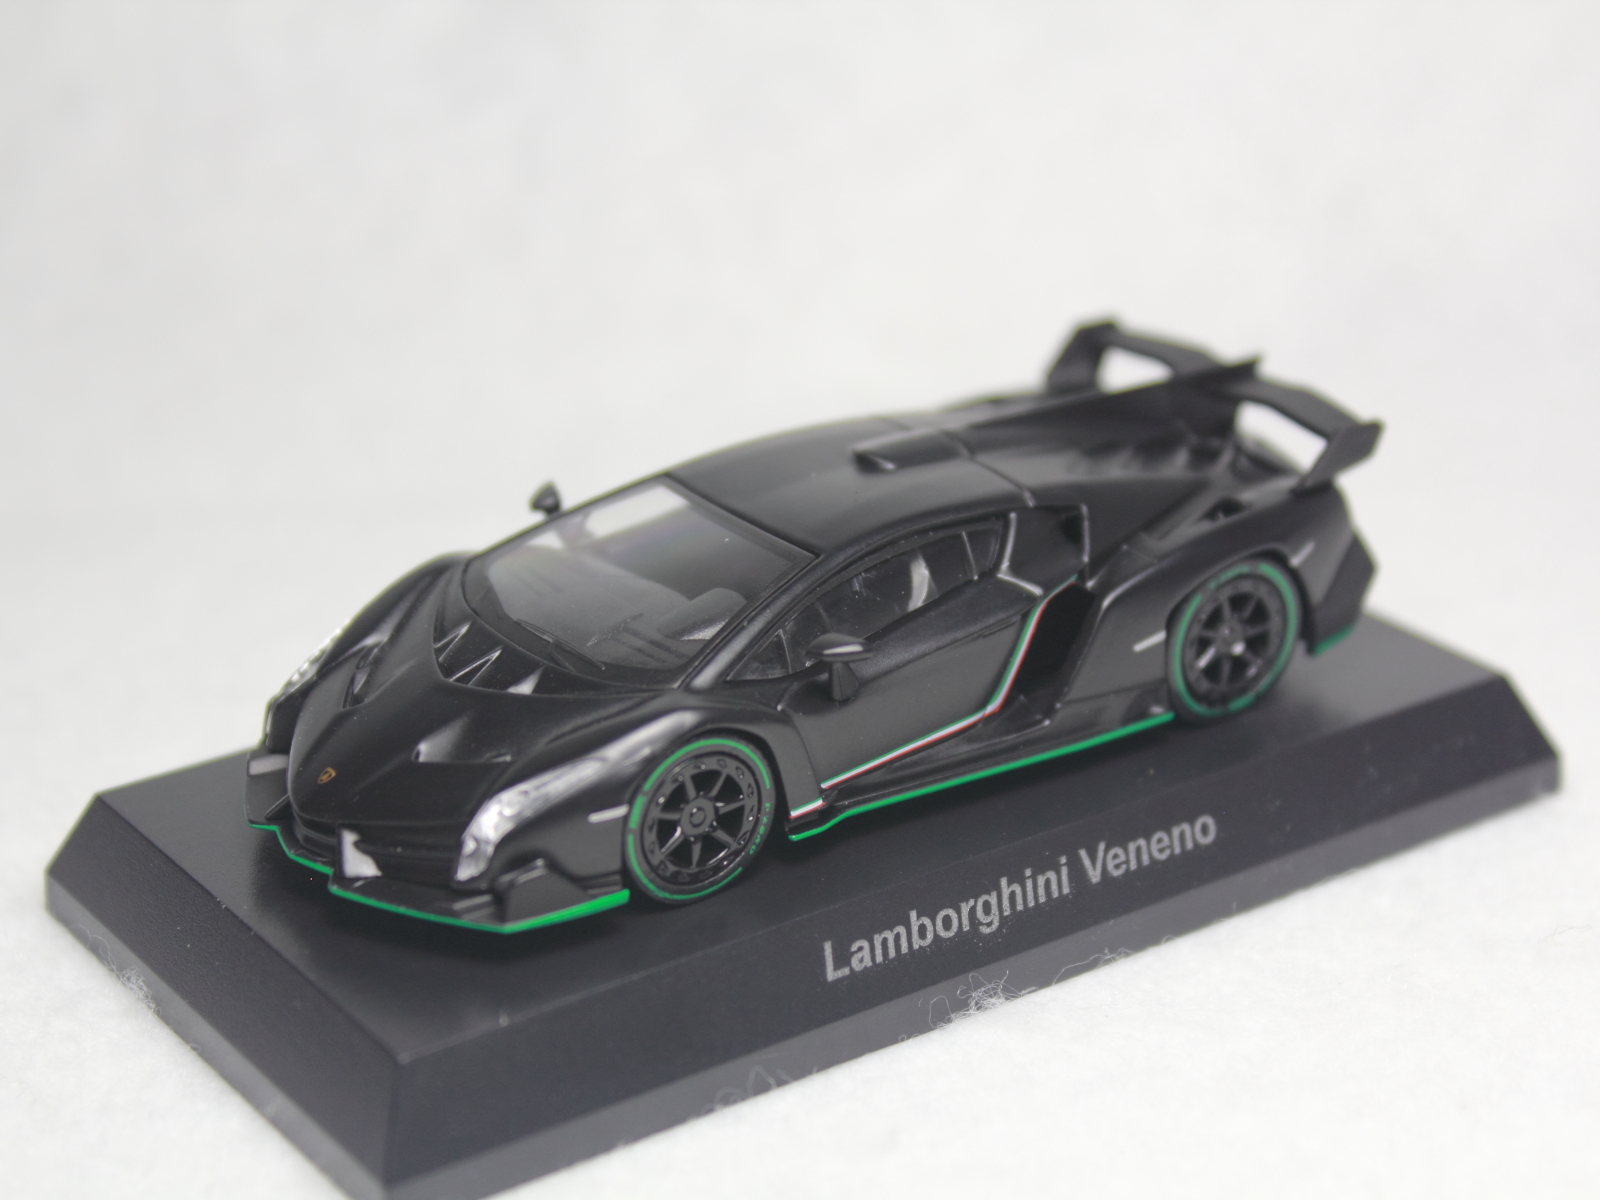 京商 ランボルギーニ ヴェネーノ 1/64 Kyosho Lamborghini Veneno 1:64